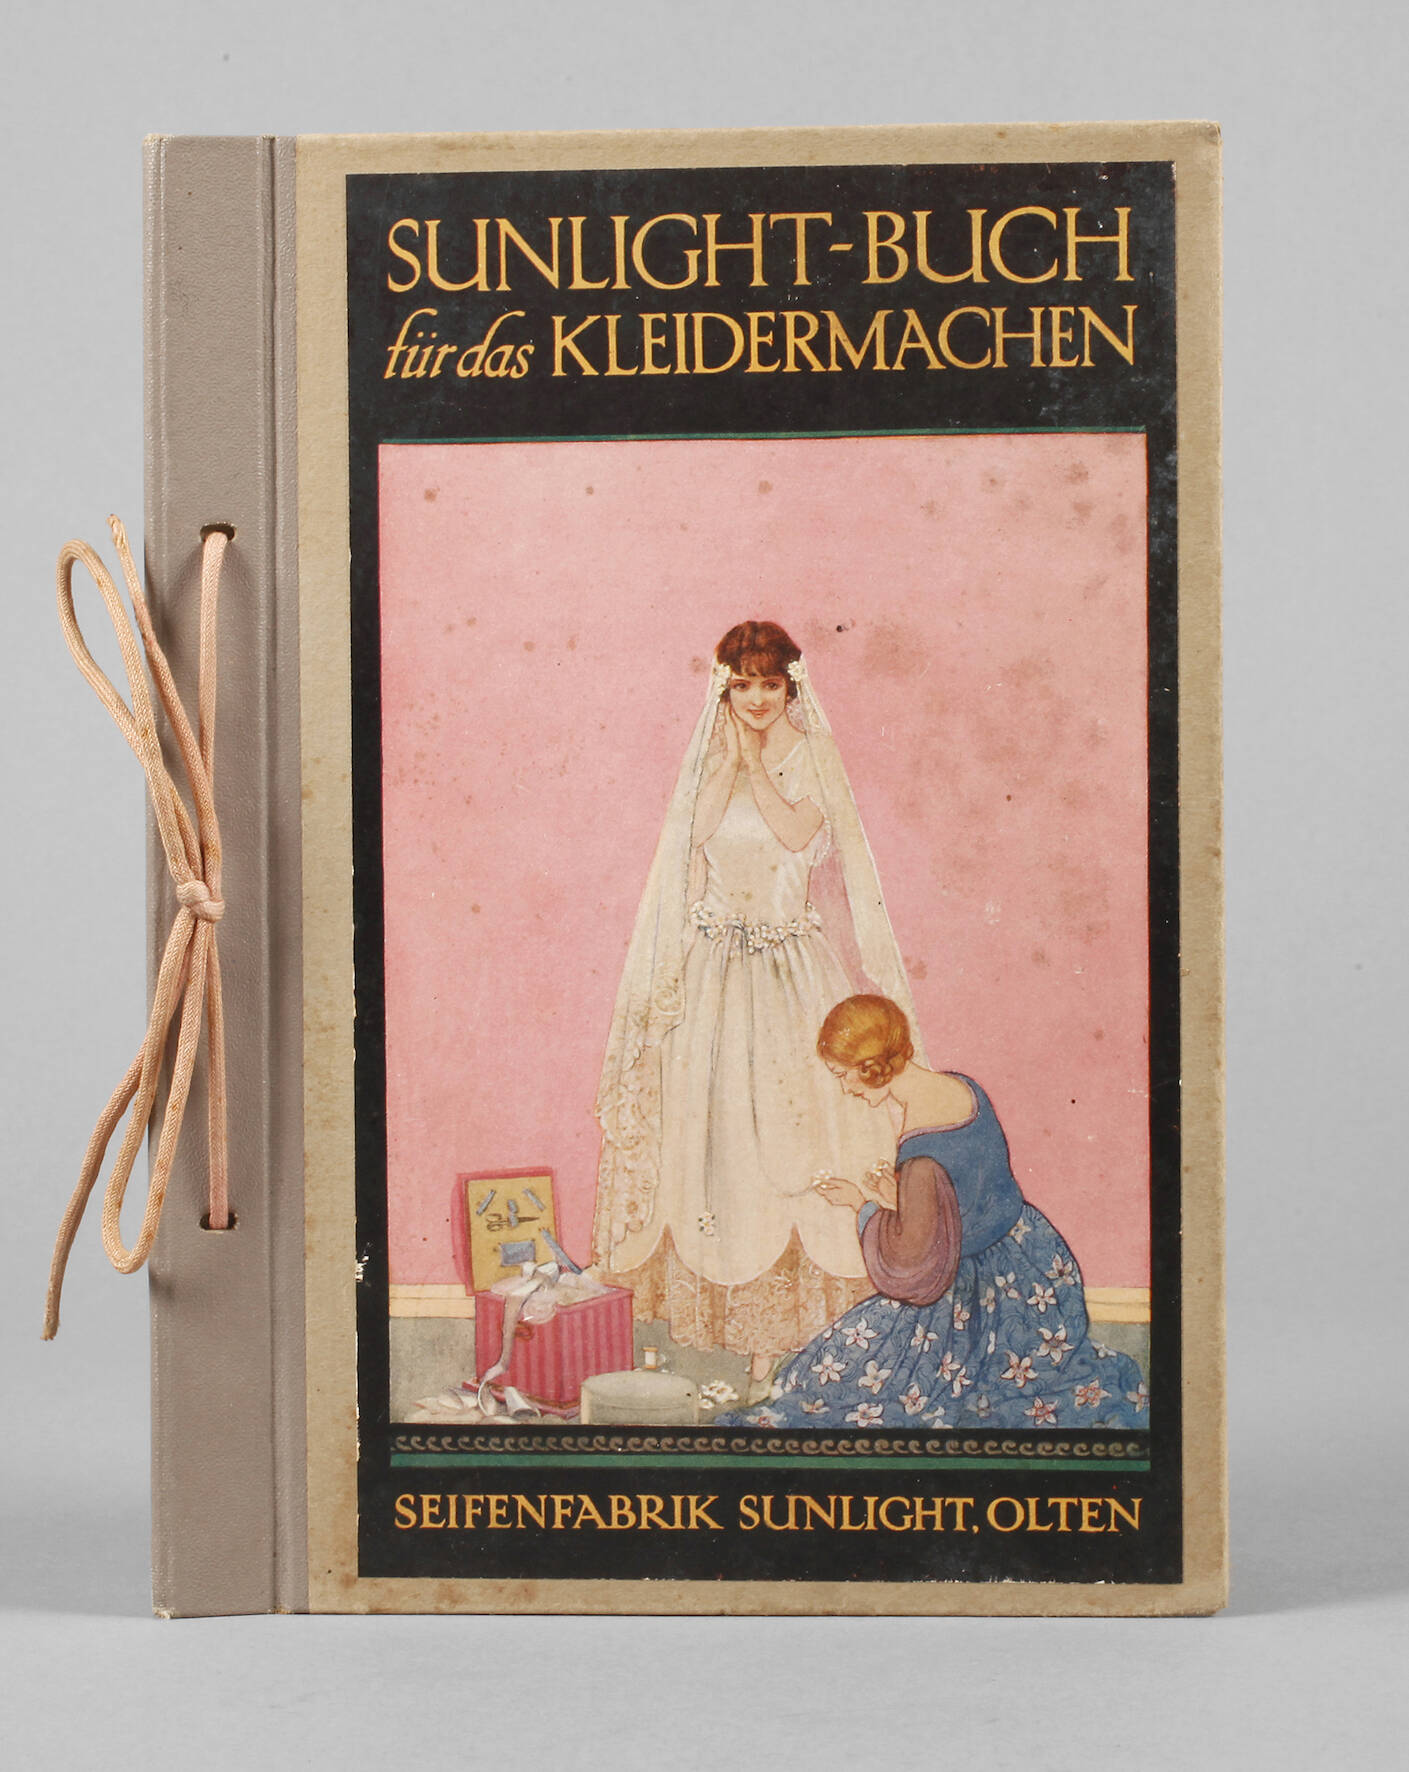 Sunlight-Buch für das Kleidermachen